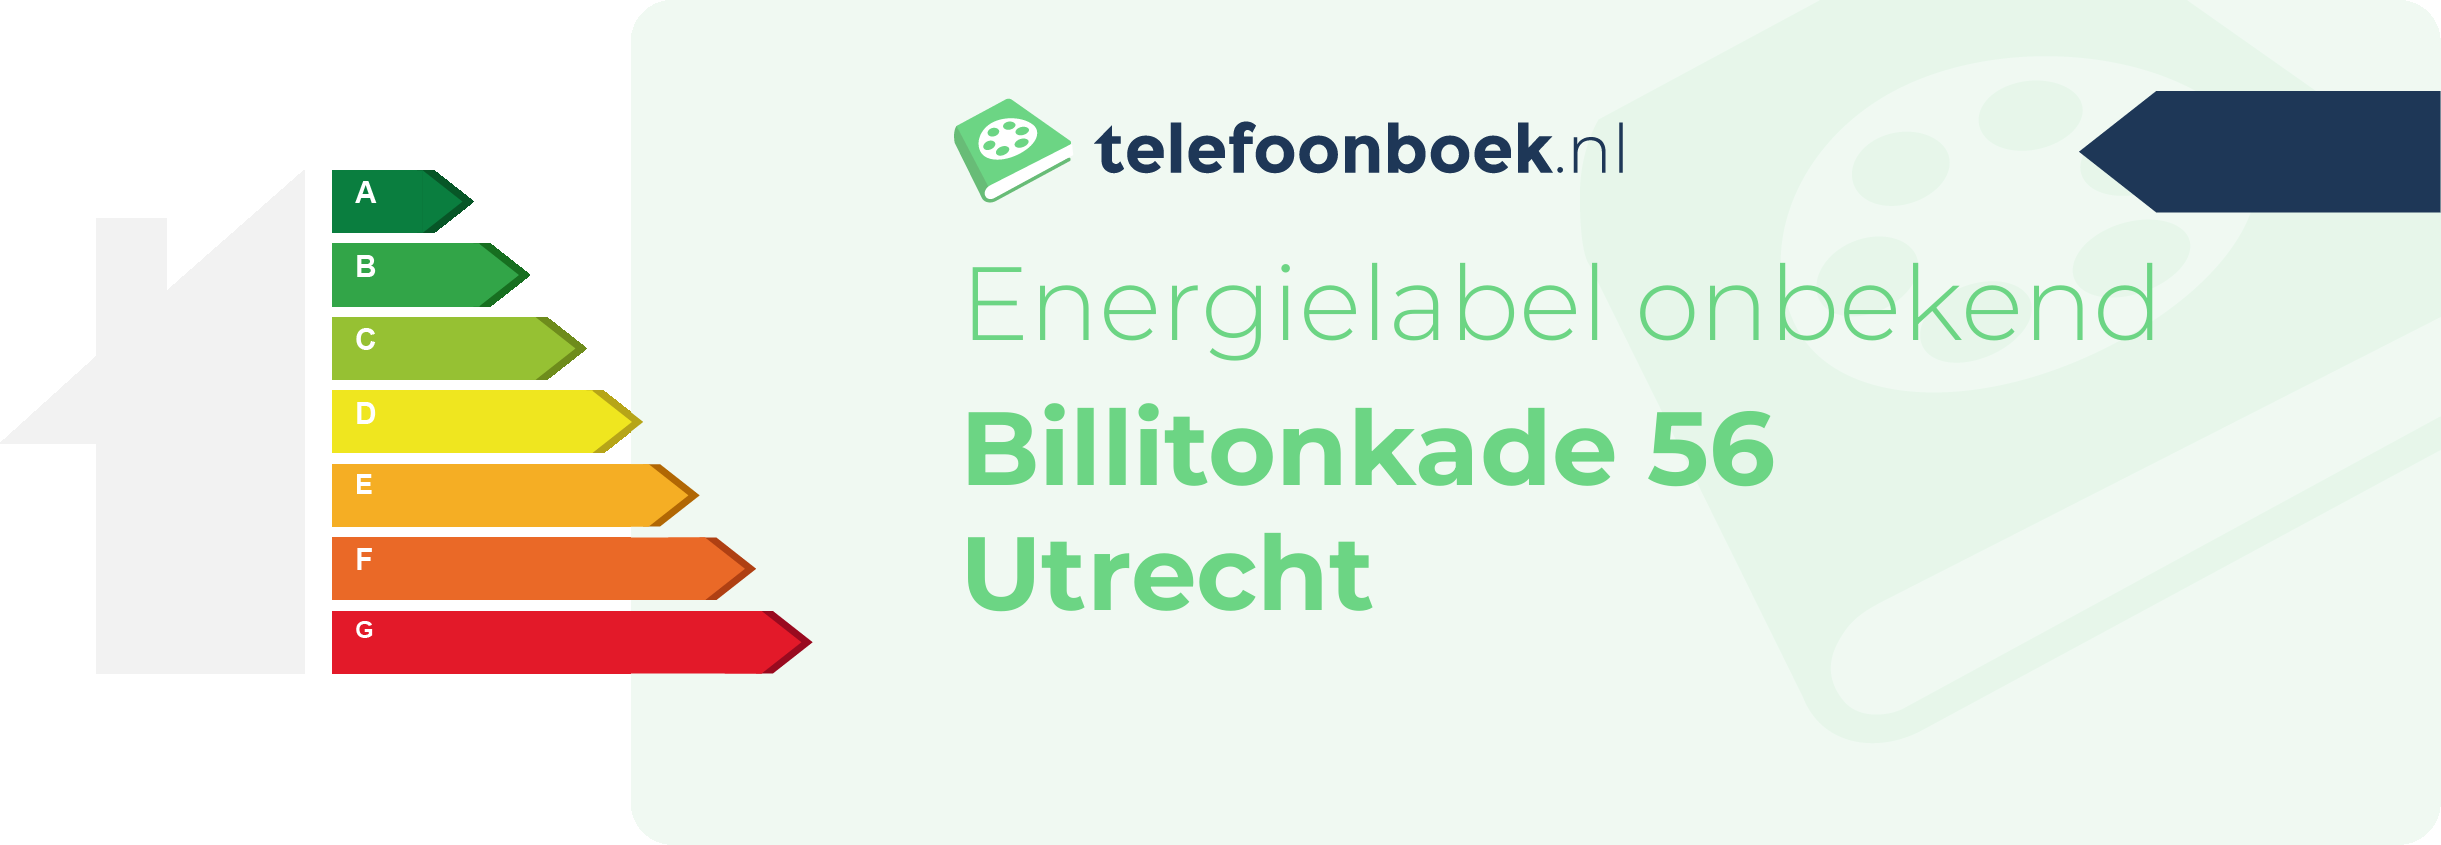 Energielabel Billitonkade 56 Utrecht